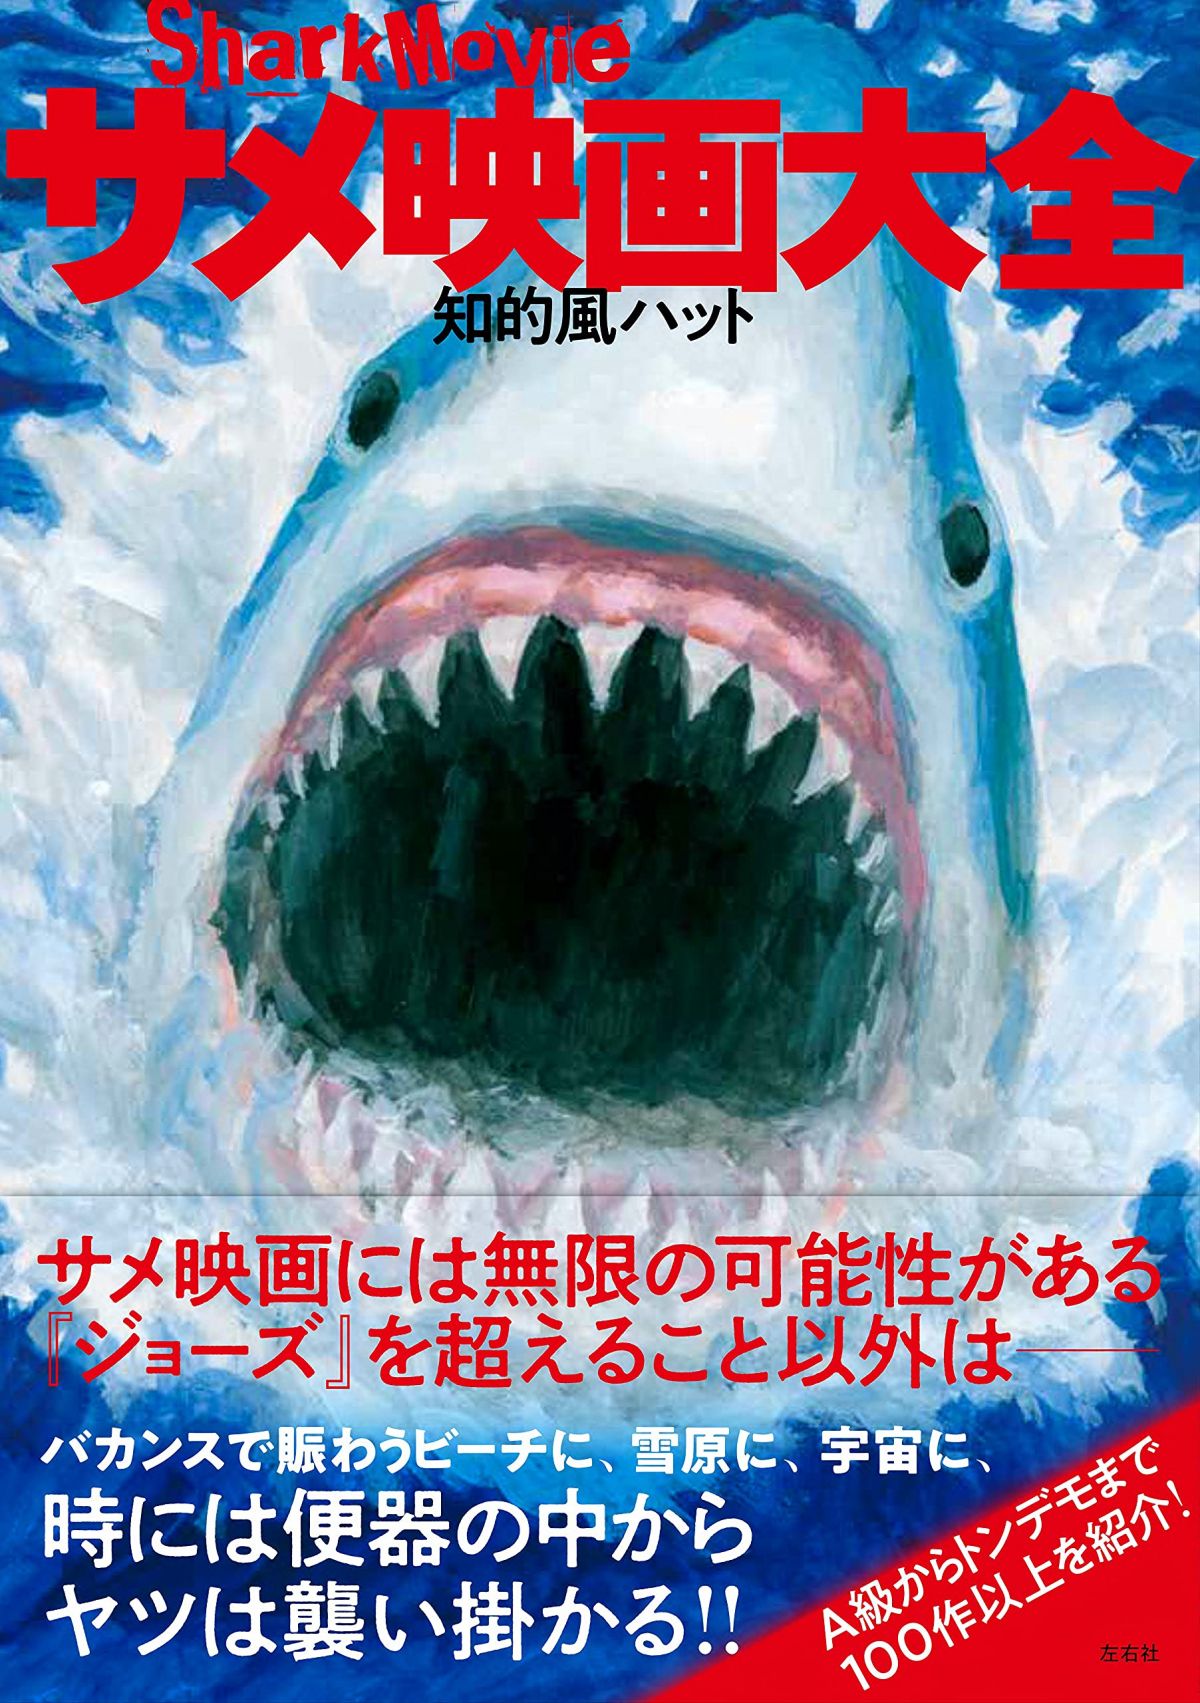 マジメに観なくてもいい 古今東西のサメ映画を集めた サメ映画大全 が売れている妙 ダ ヴィンチweb